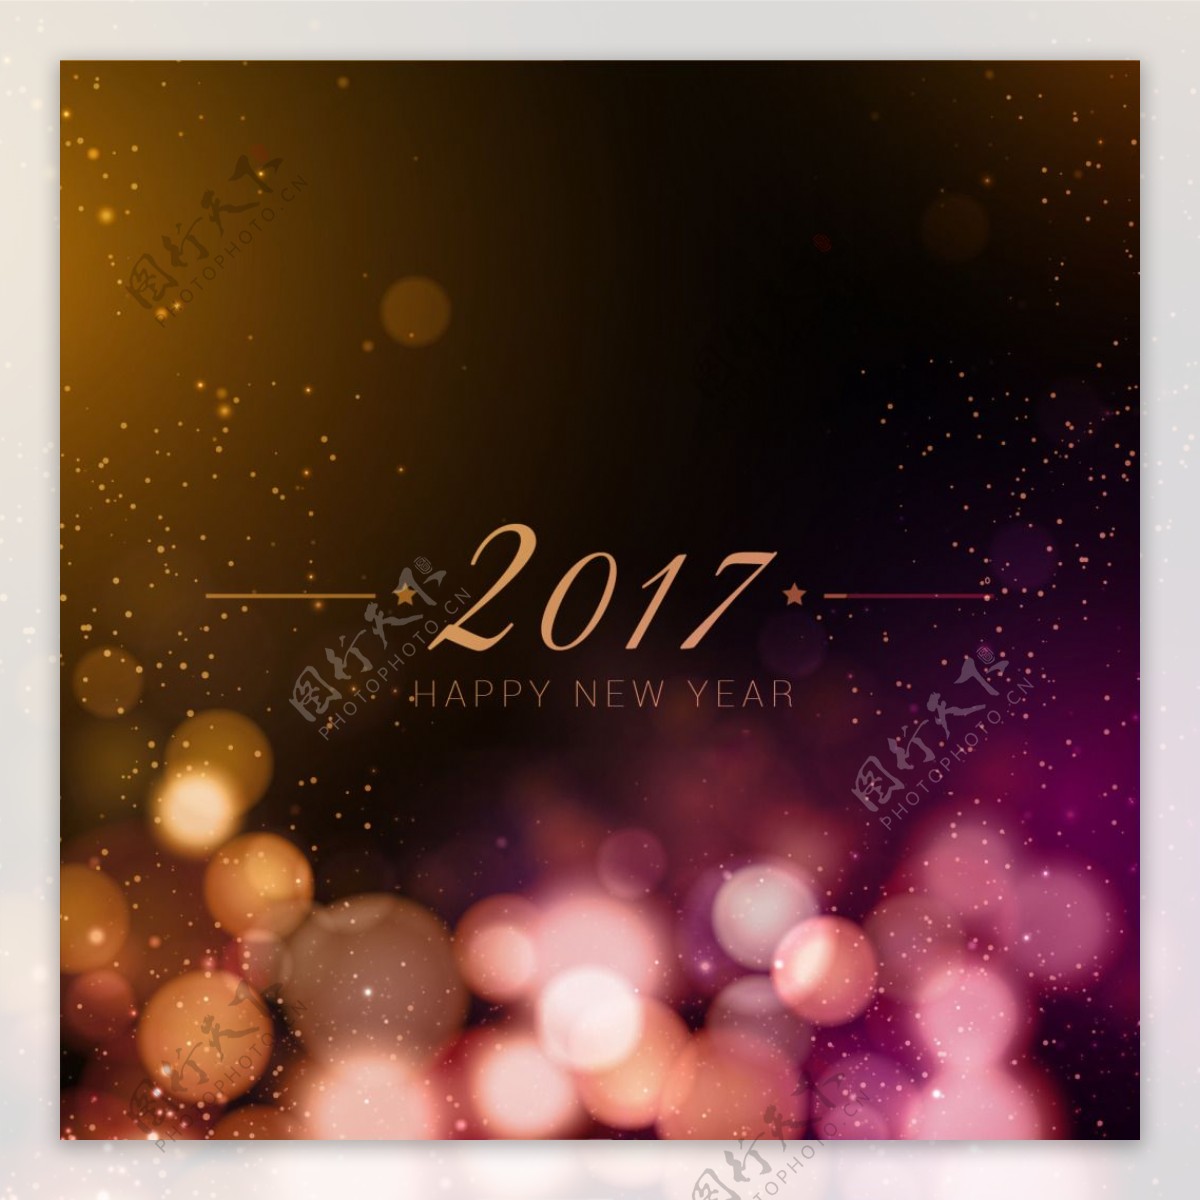 2017新年背景虚化背景